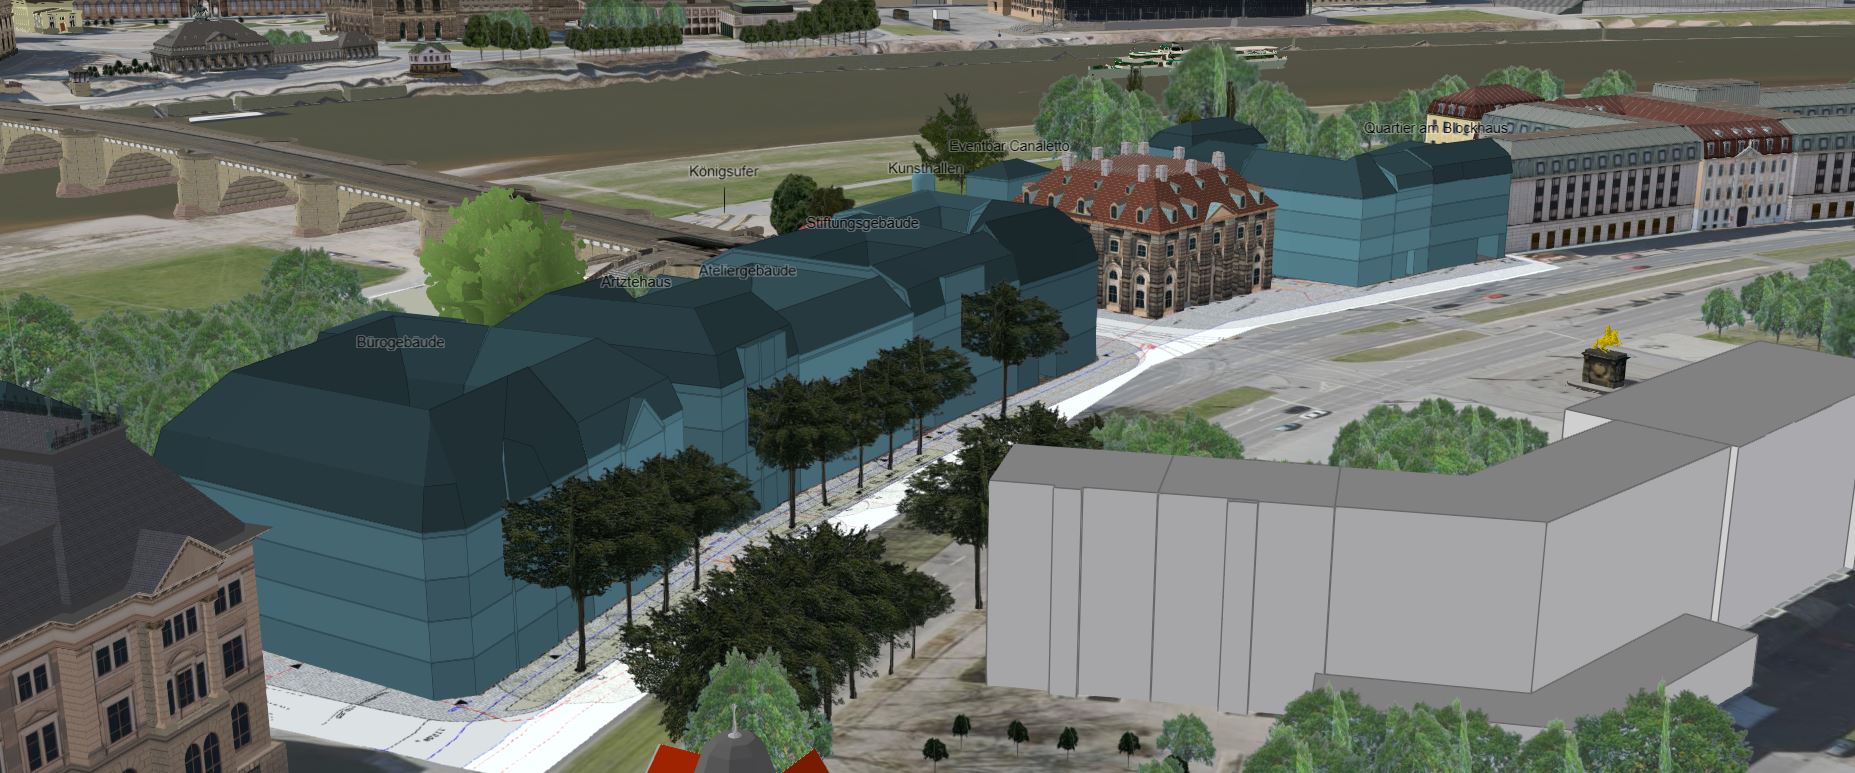 Visualisierung zukünftige Bebauung am Königsufer, Planungsstand 2022